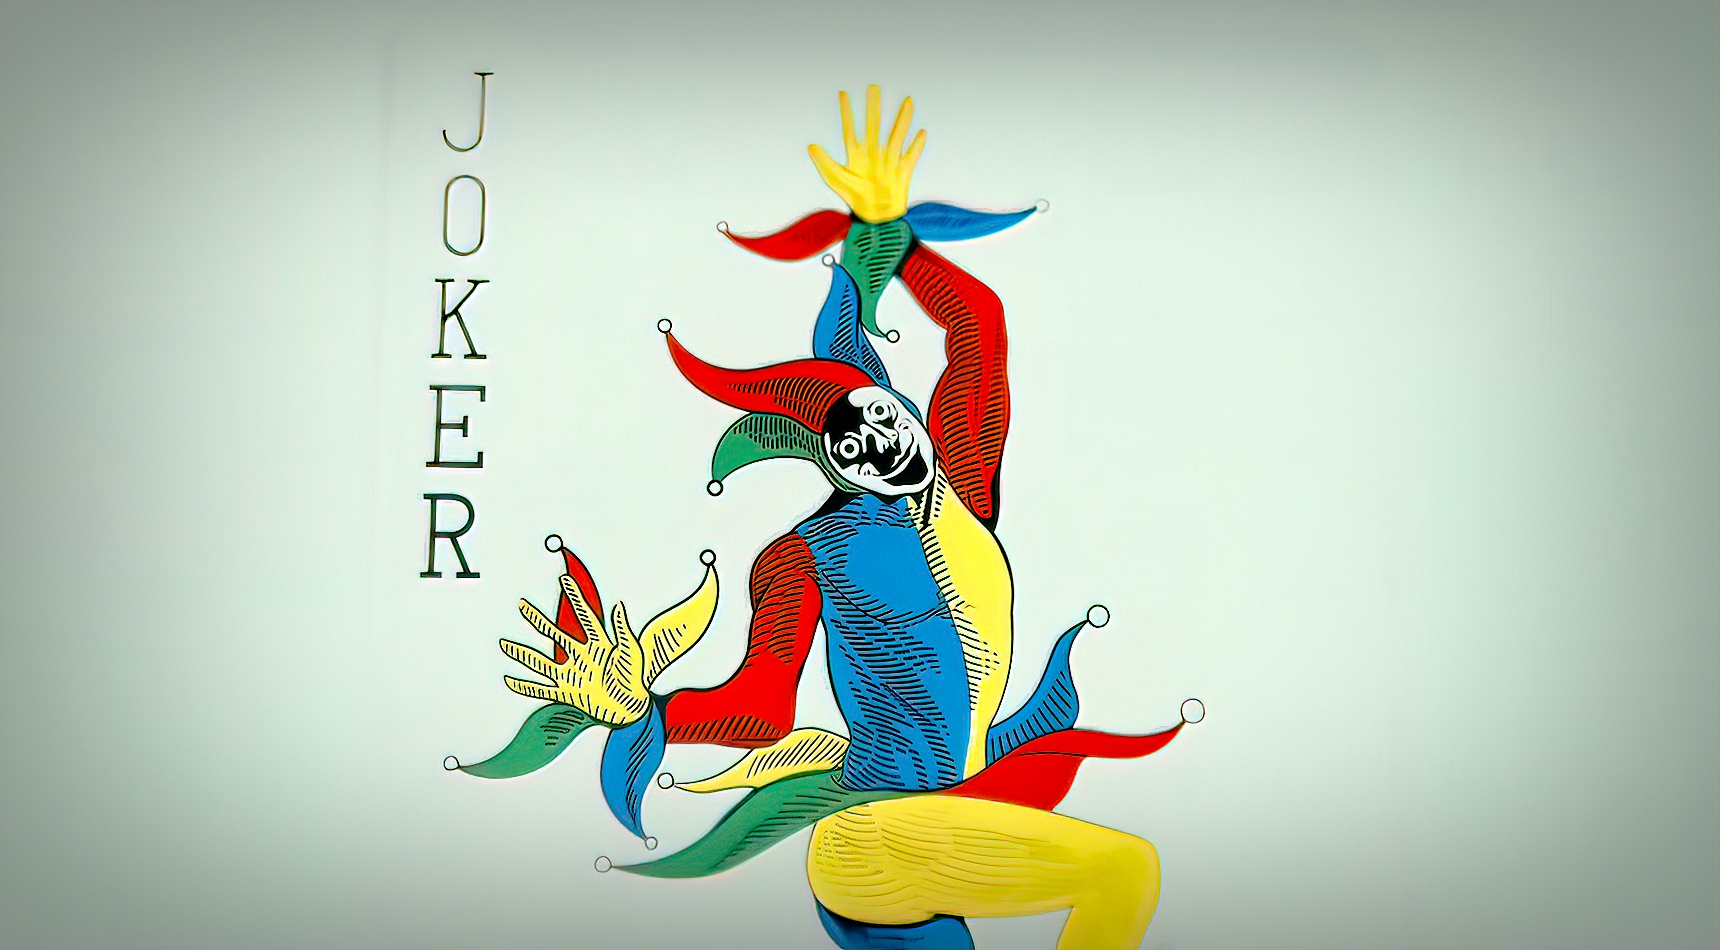 Dlaczego w talii kart znajduje się joker